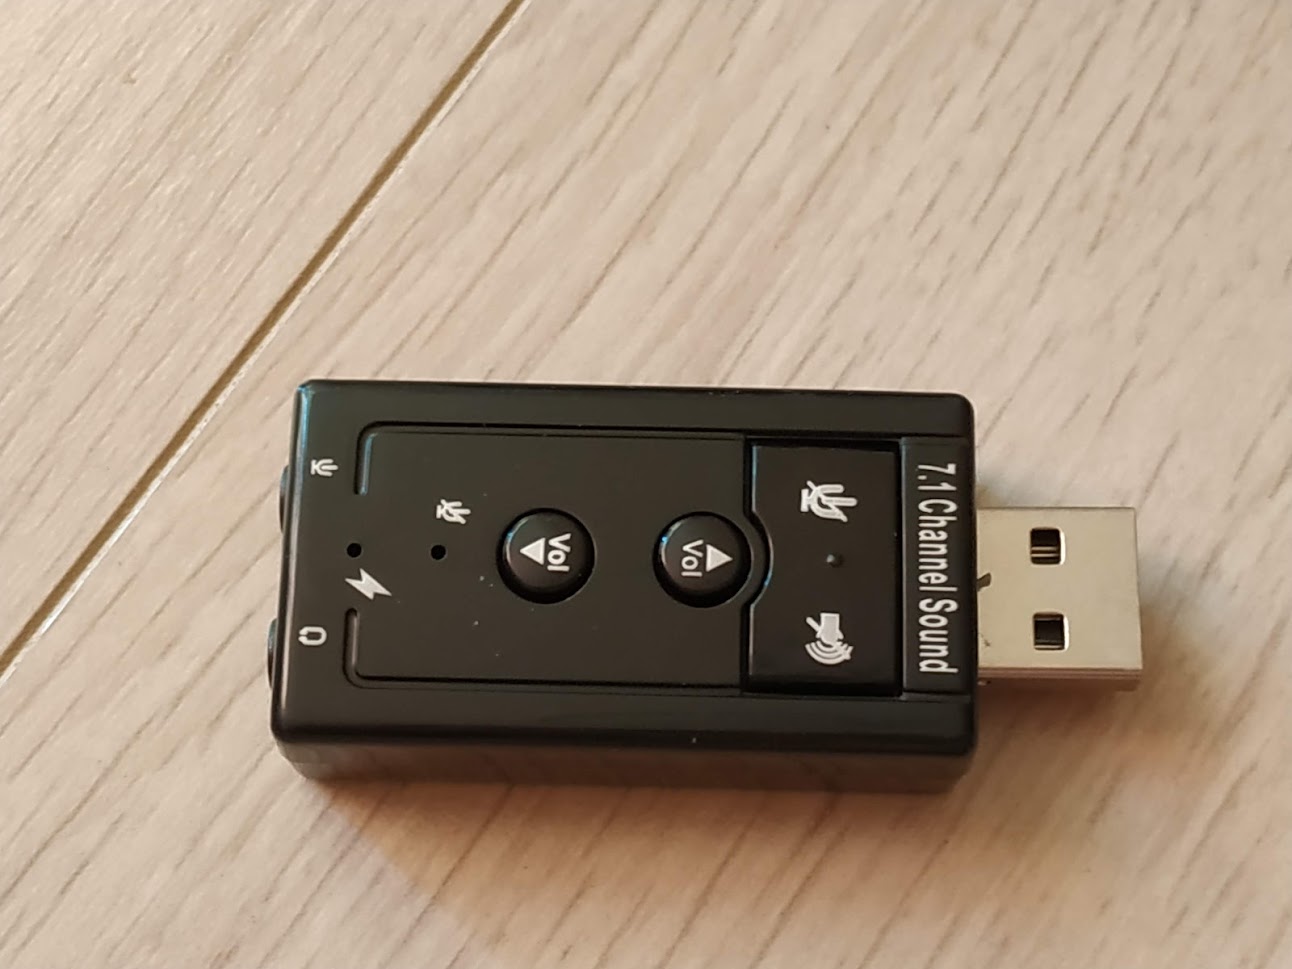 Kebidu USB 2.0 외장 사운드 카드 제품 전면